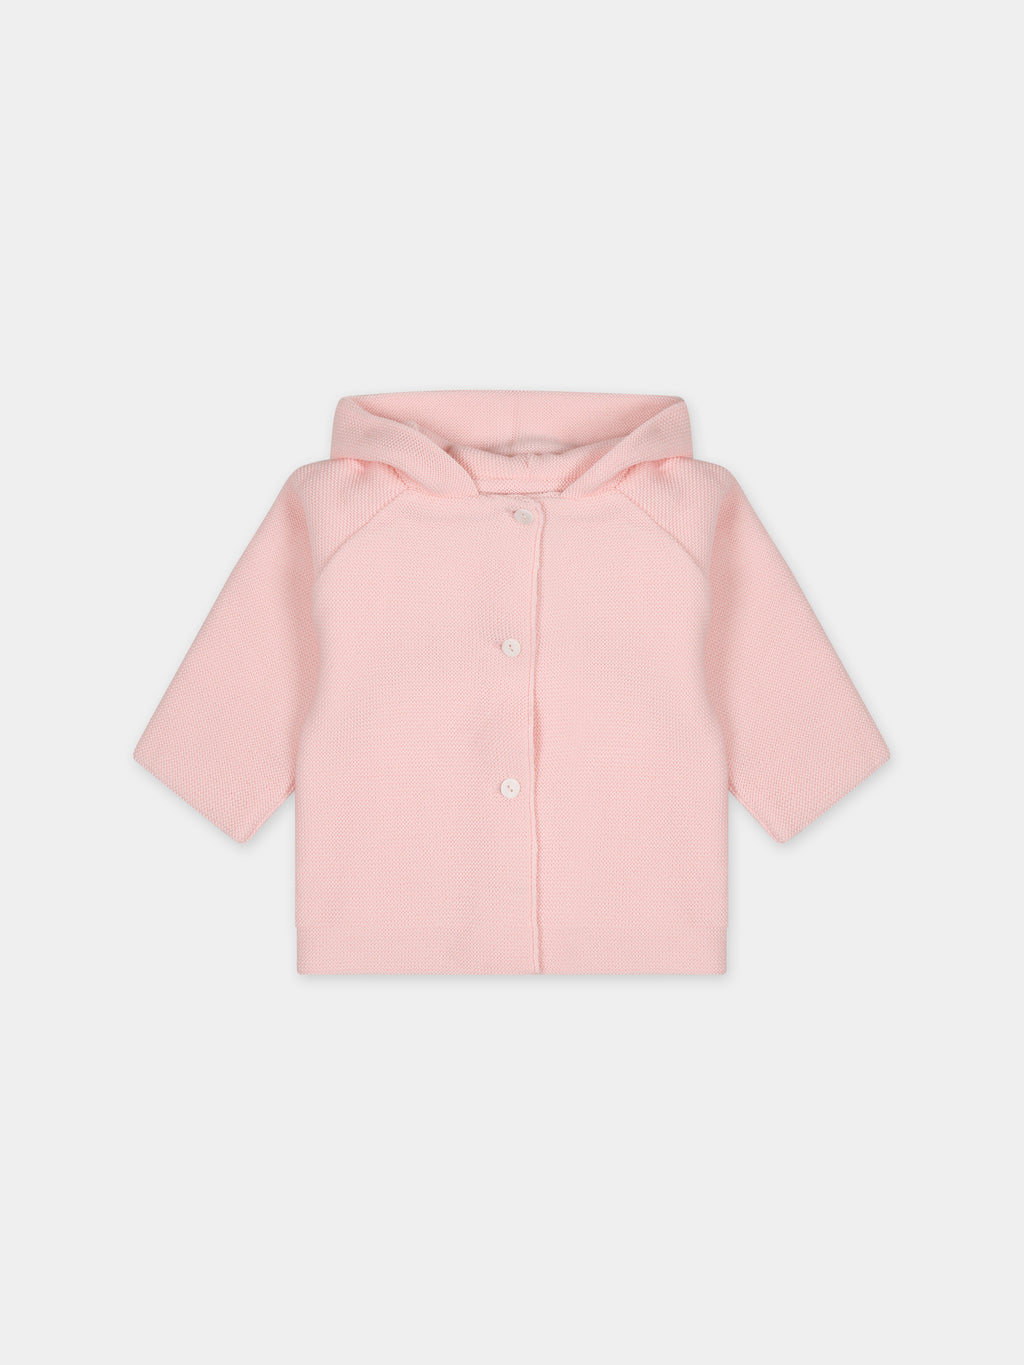 Manteau rose pour bébé fille